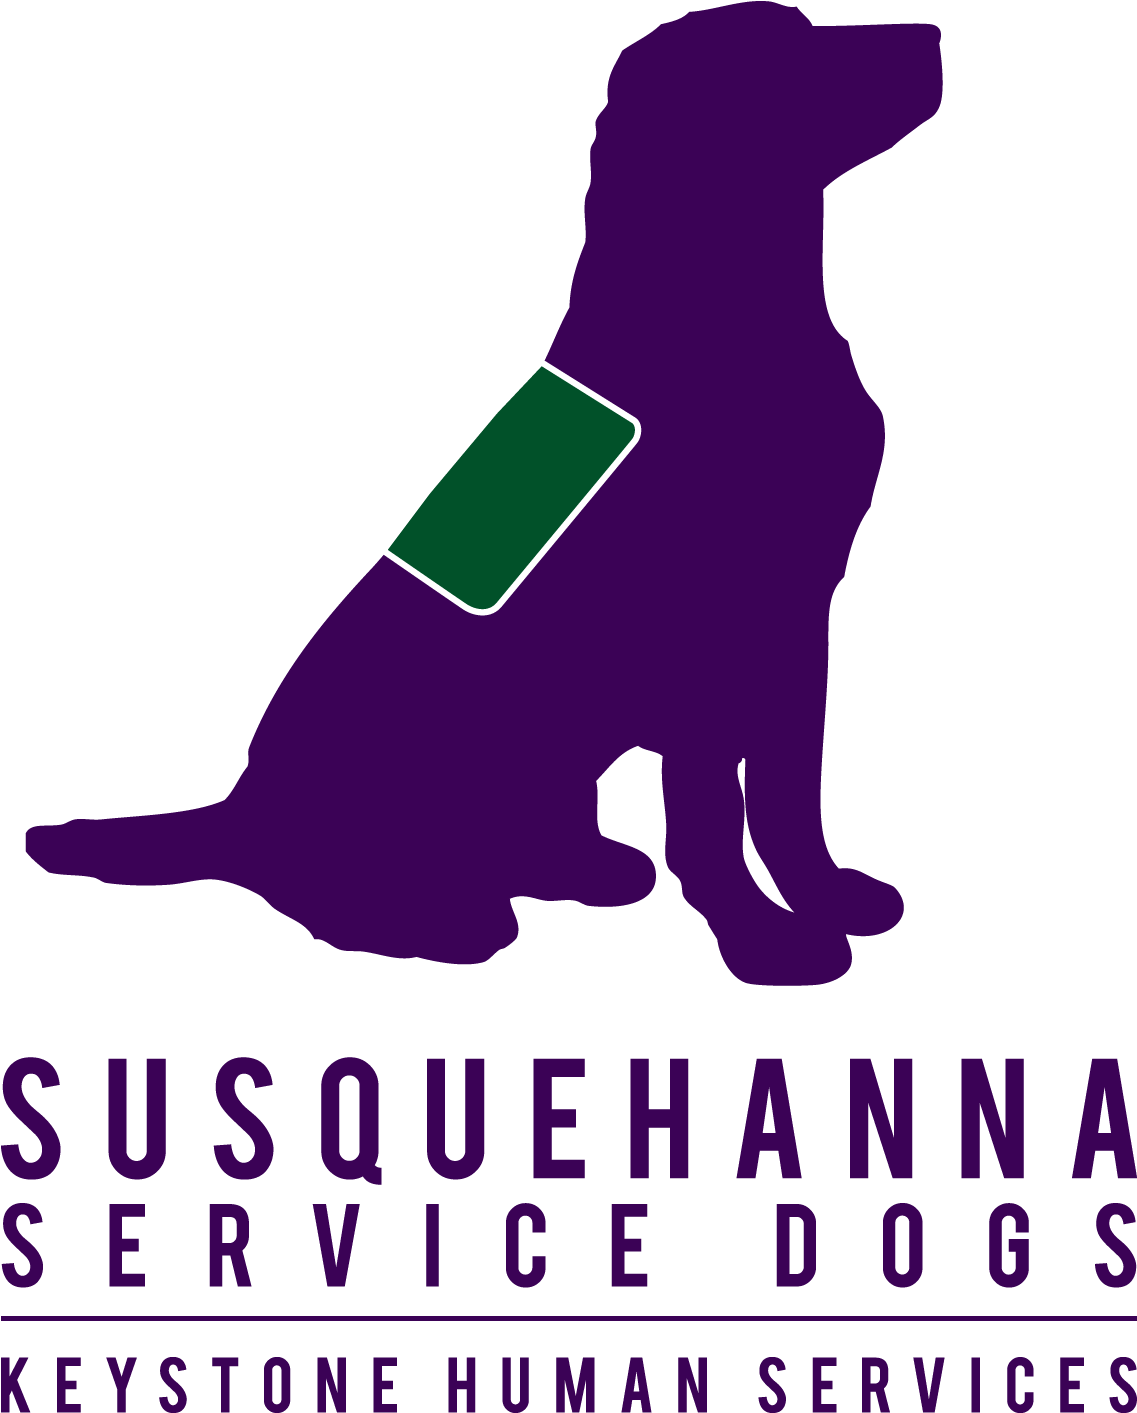 Susquehanna Service Dogs - Susquehanna Service Dogs Logo (1200x1500), Png Download